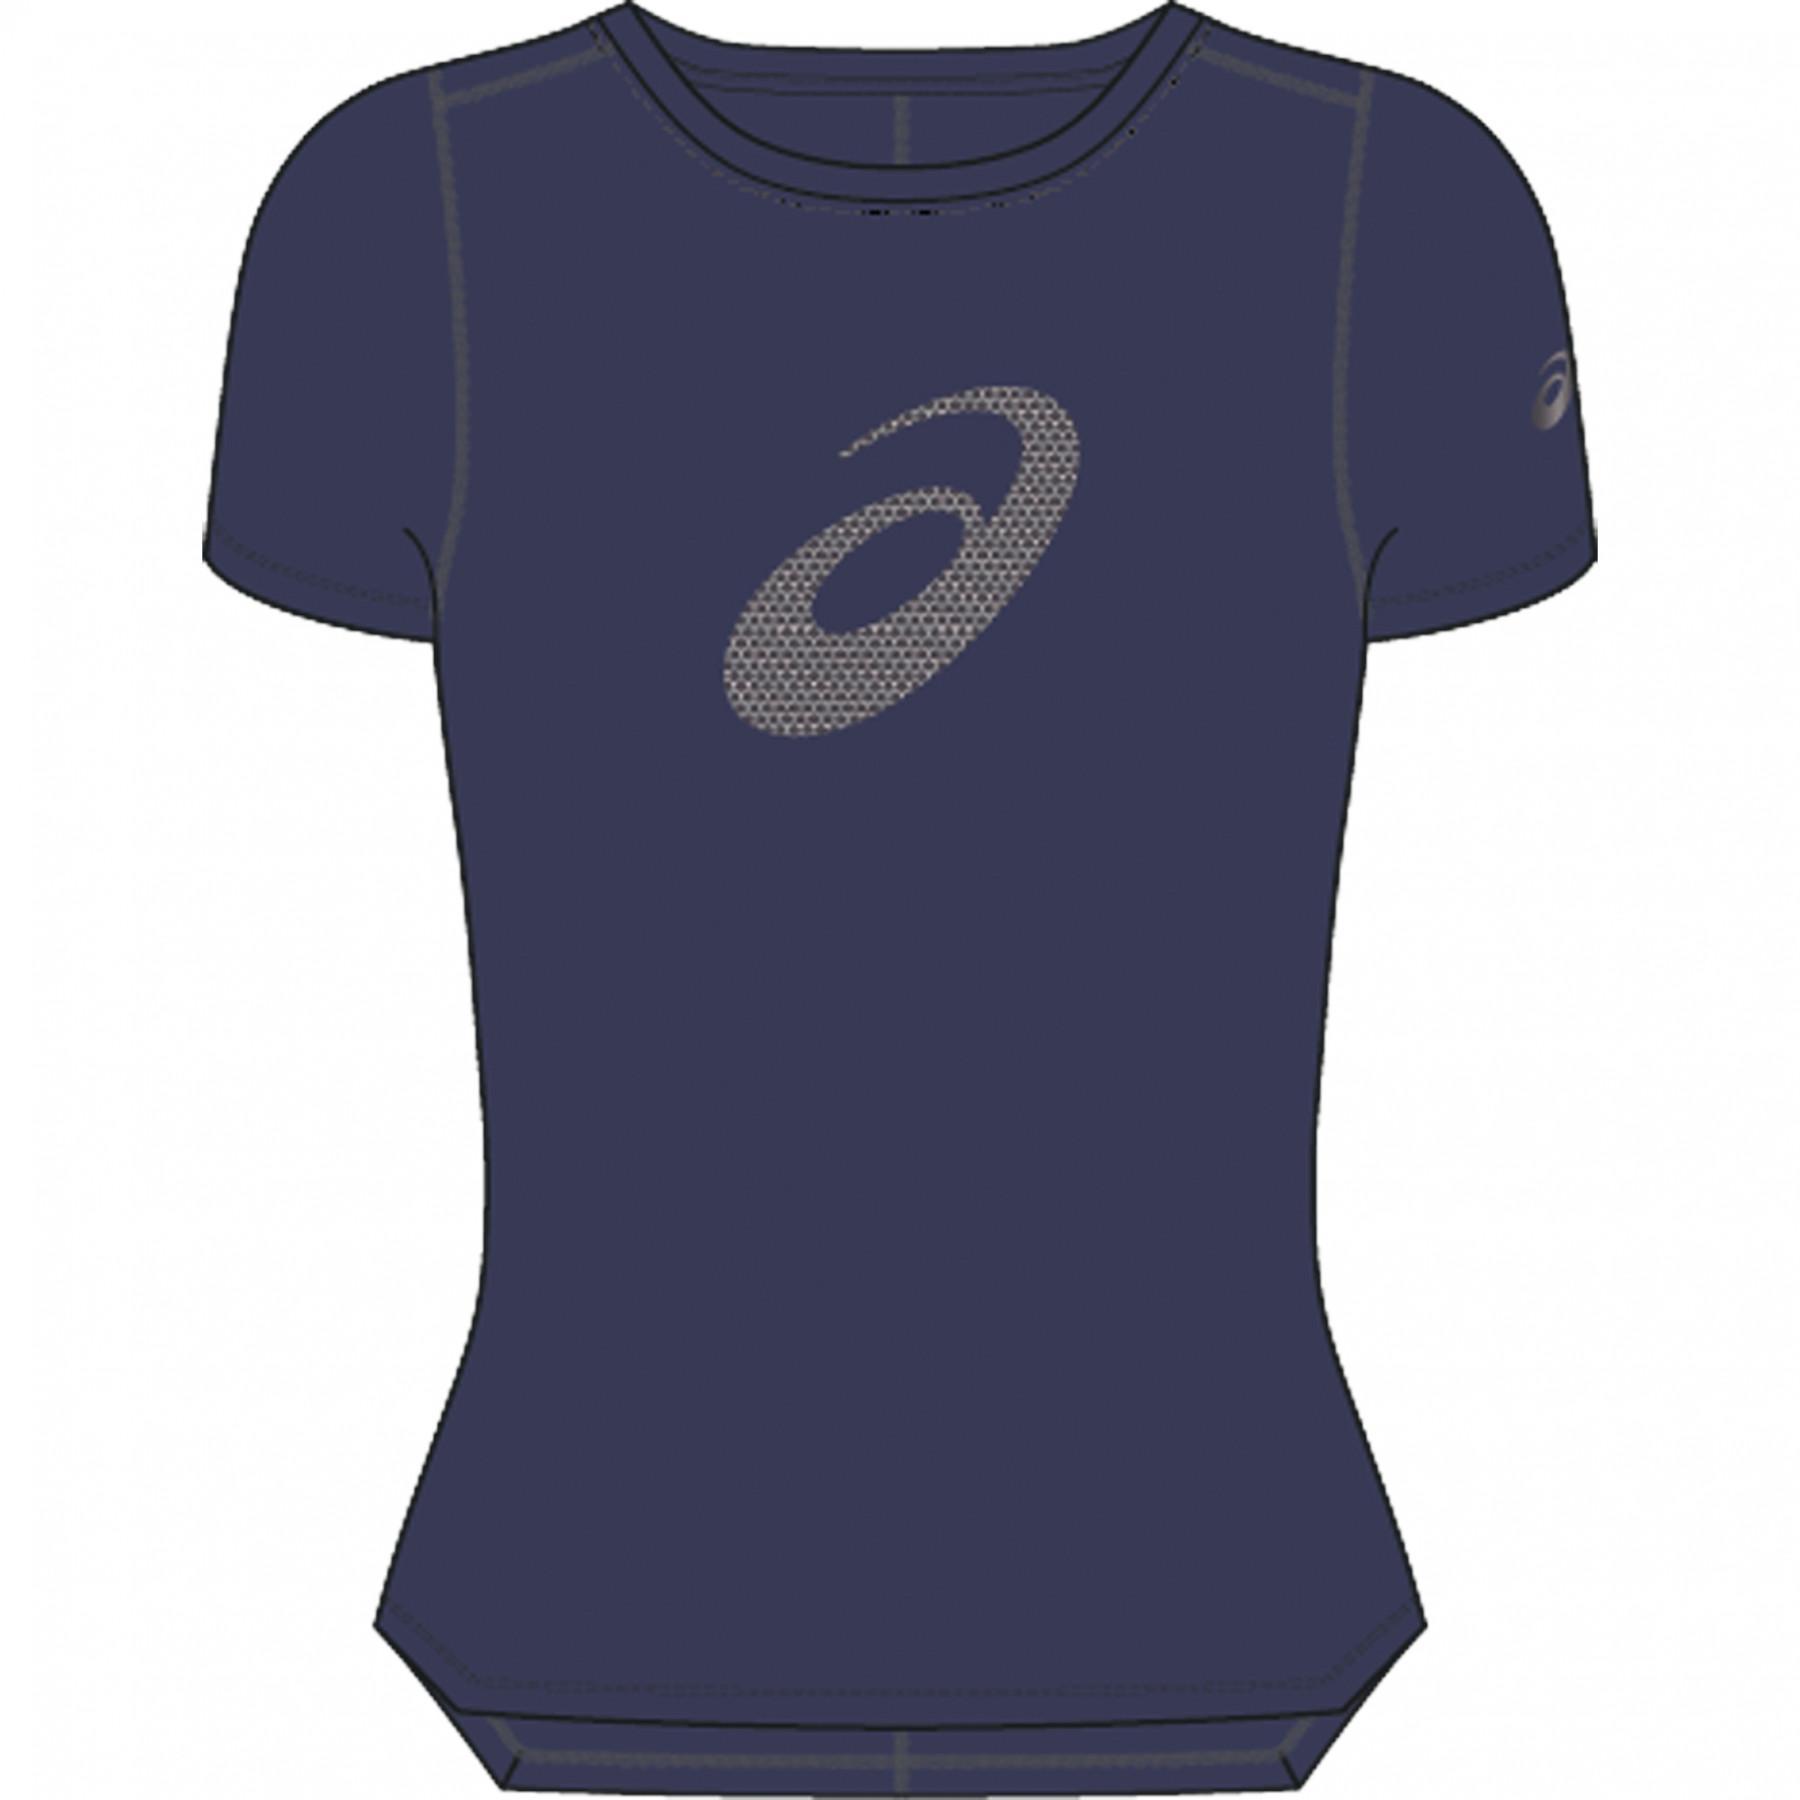 Camiseta feminina Asics Silver Top Graphic